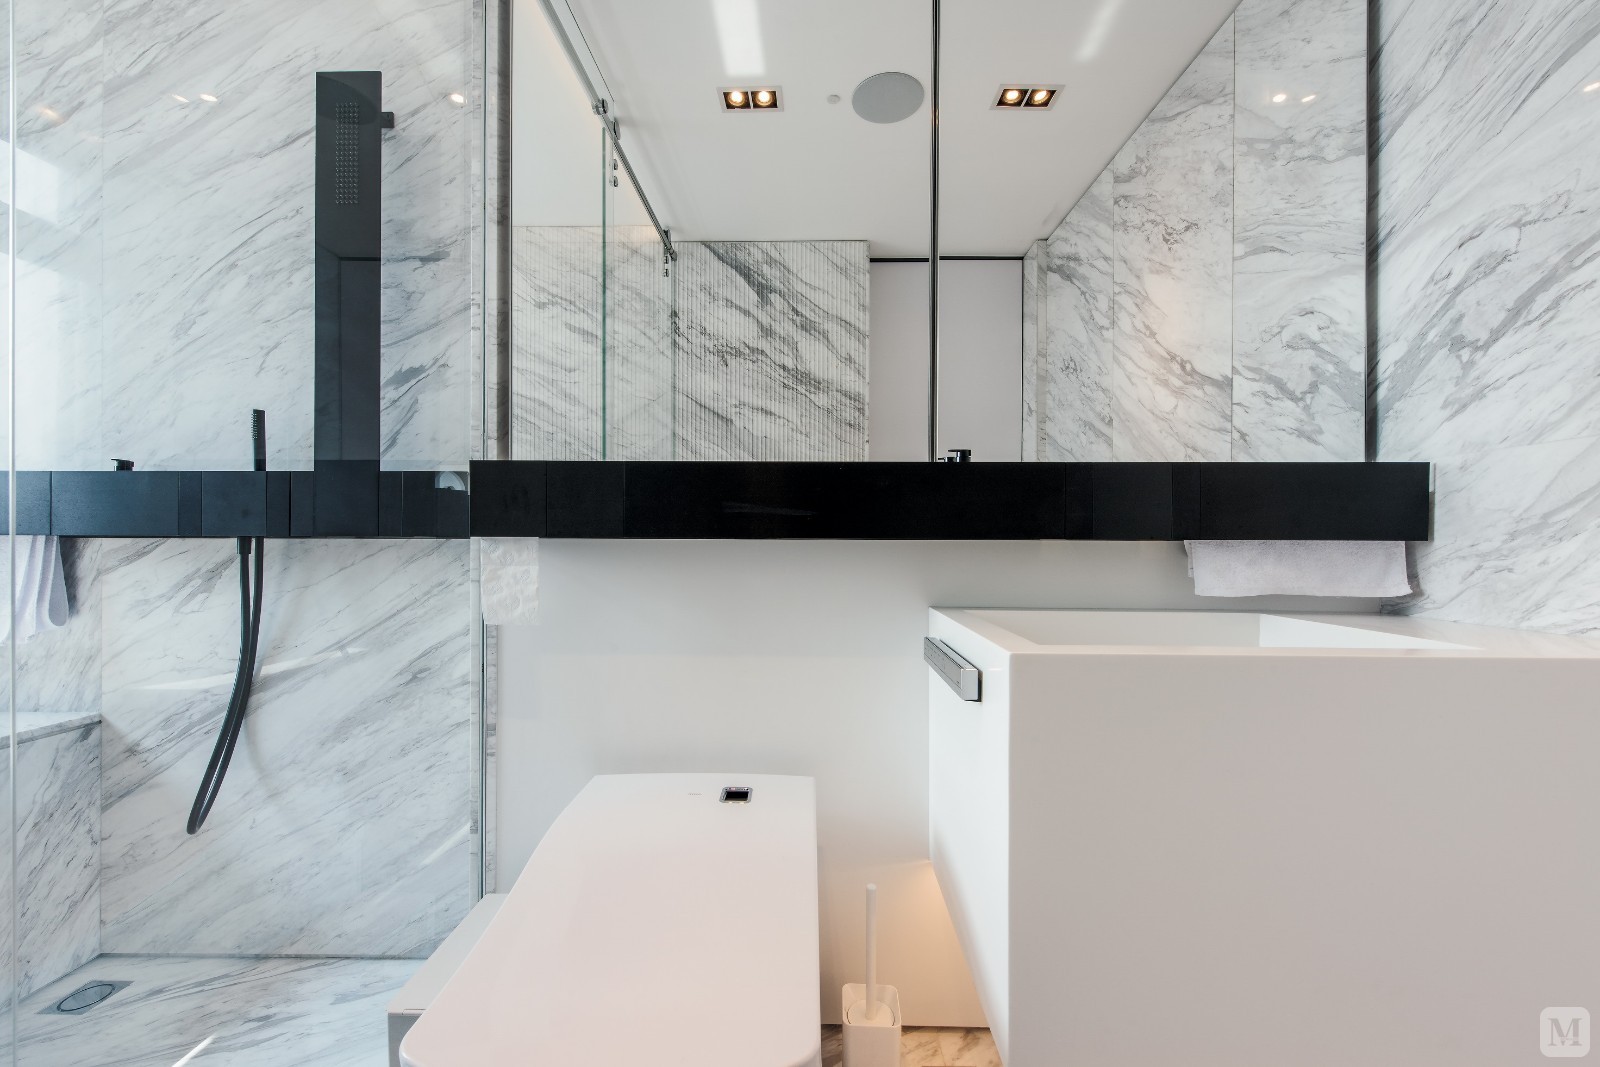 大理石材质墙壁，配上瓷白卫浴在暖色系的灯光下打造出舒适的沐浴环境